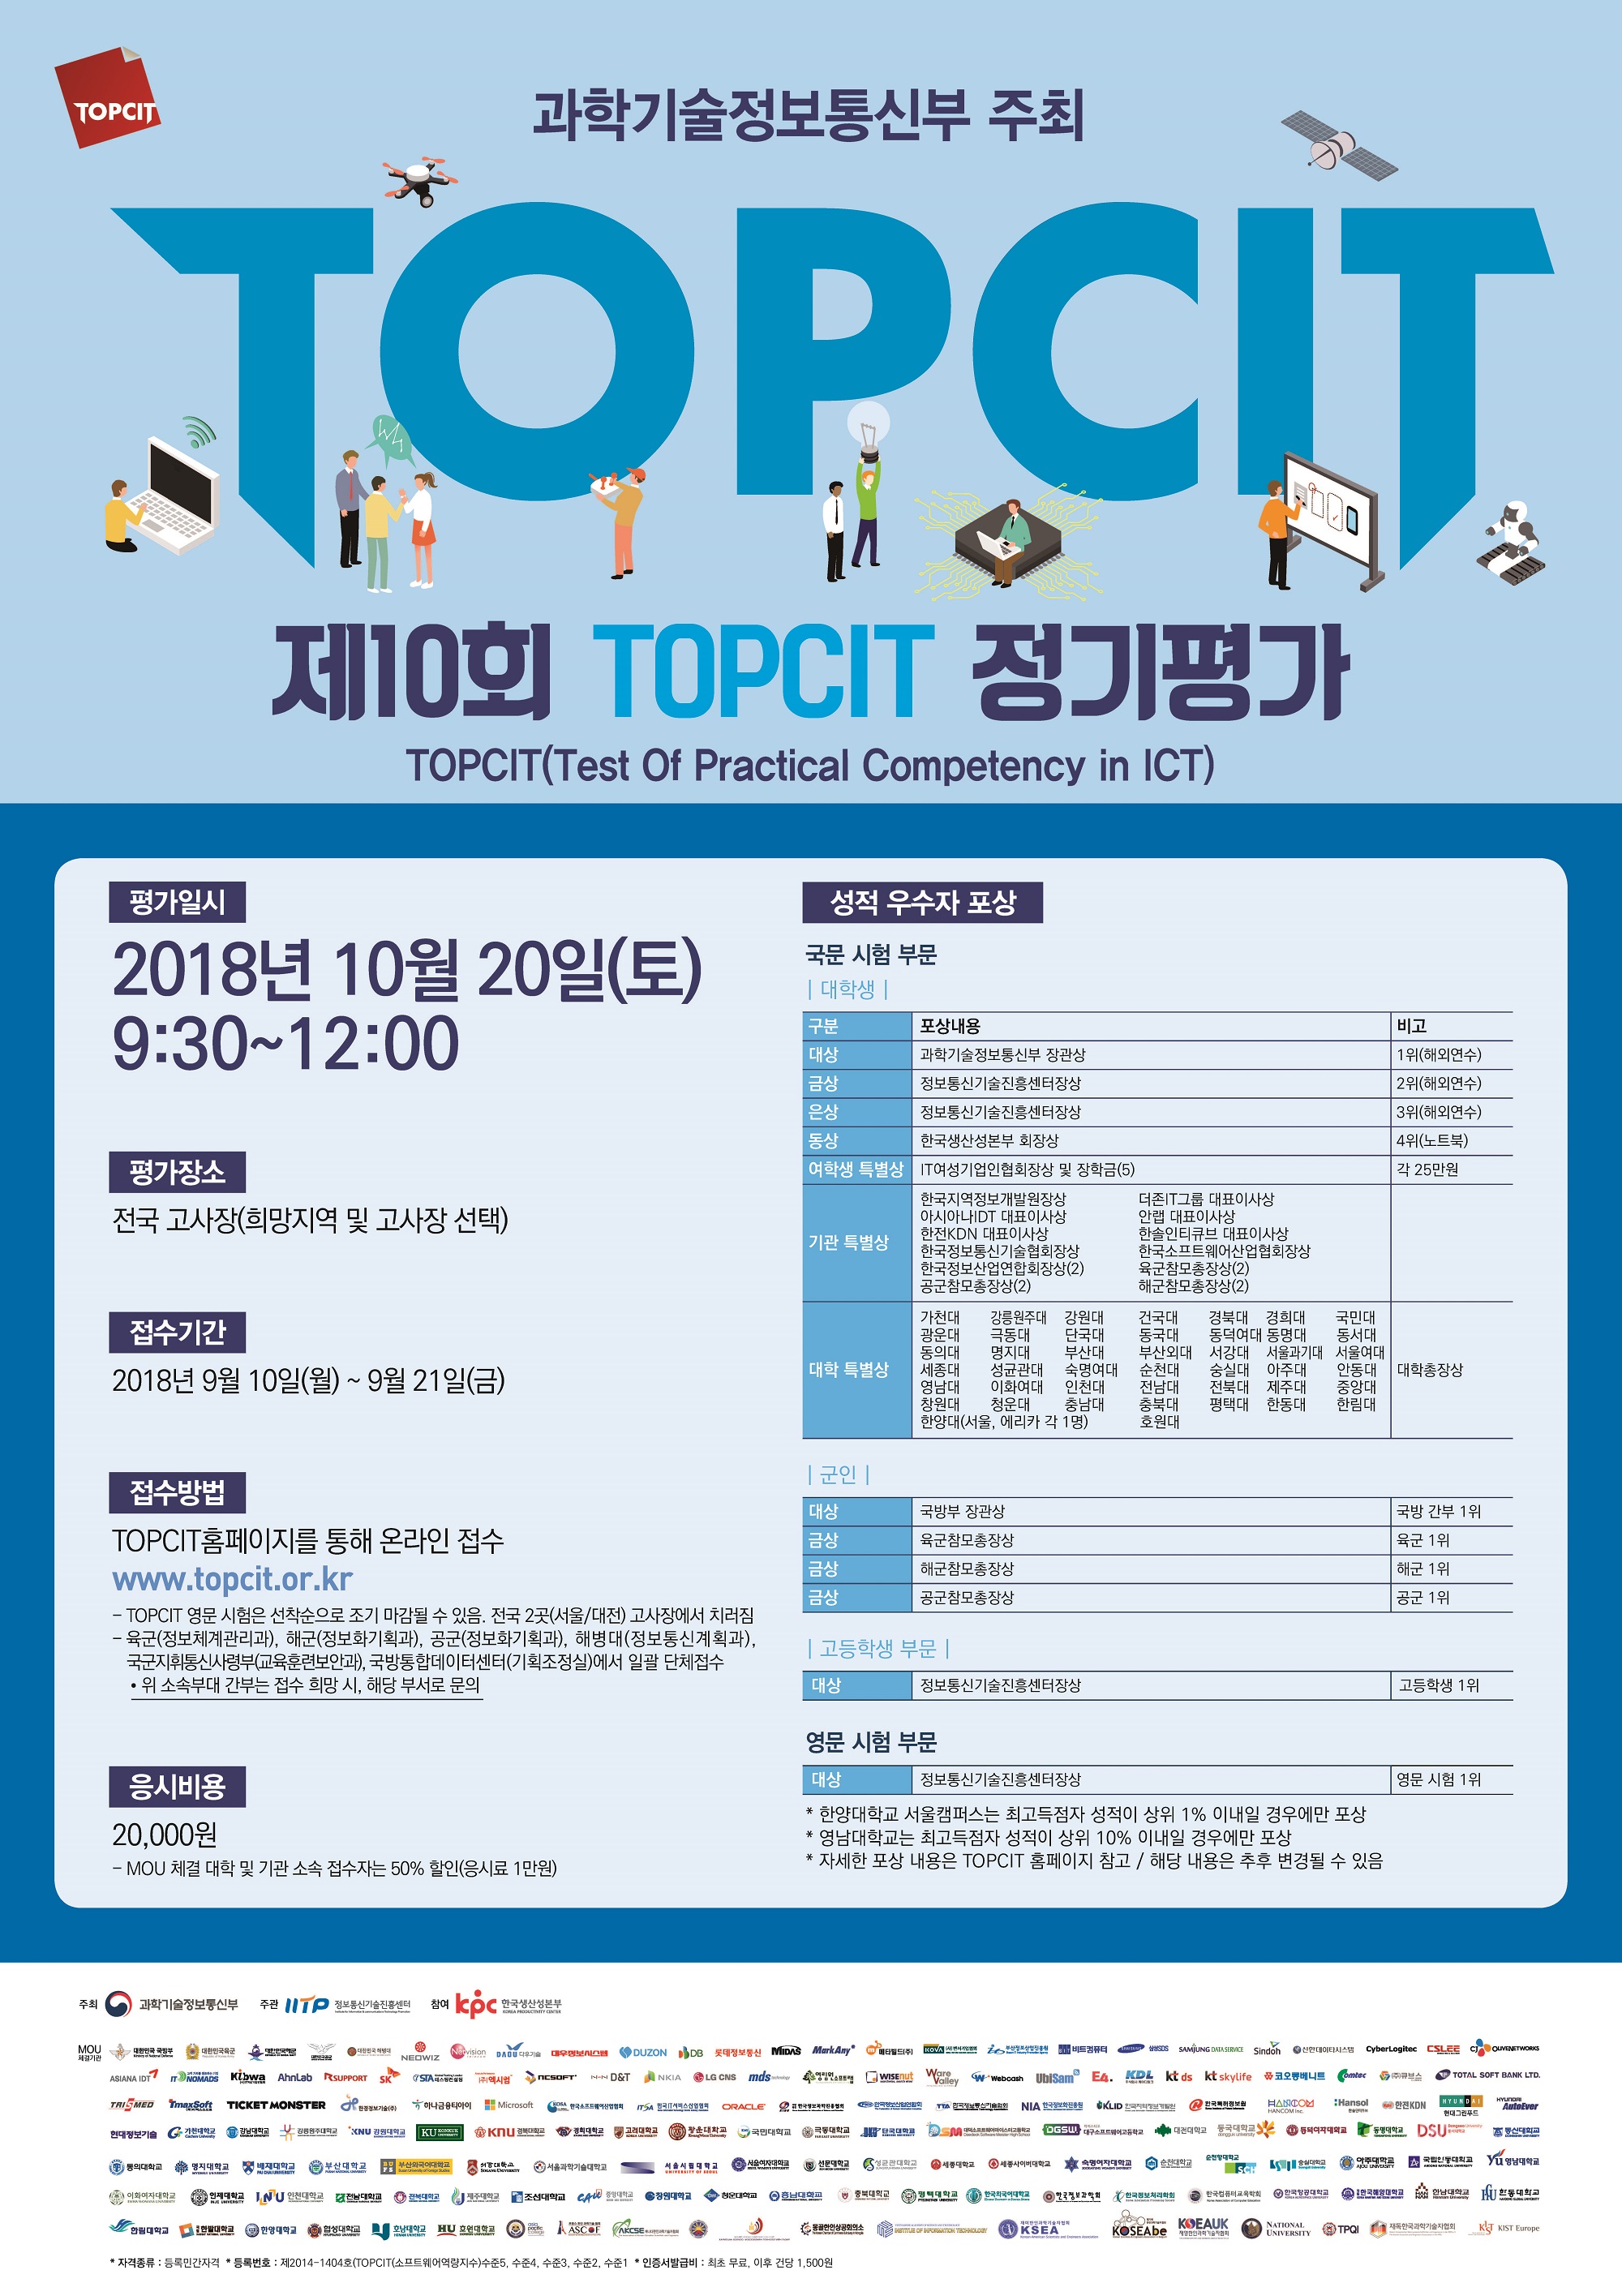 과학기술정보통신부 주최
TOPCIT
제10회 TOPCIT 정기평가
TOPCIT(Test Of Practical Competency in ICT)
평가일시
2018년 10월 20일(토) 9:30~12:00
평가장소
전국 고사장(희망지역 및 고사장 선택)
접수기간
2018년 9월 10(월)~9월 21일(금)
접수방법
TOPCIT홈페이지를 통해 온라인 접수
www.topcit.or.kr
-TOPCIT 영문시험은 선착순으로 조기 마감될 수 있음. 전국 2곳(서울/대전) 고사장에서 치러짐
-육군(정보체계관리과),해군(정보화기획과),공군(정보화기획과),해병대(정보통신계획과),국국지휘통신사령부(교육훈련보안과)국방통합데이터센터(기획조정실)에서 일괄 단체접수
*위 소속부대 간부는 접수 희망 시, 해당 부서로 문의
응시비용
20,000원
-MOU 체결 대학 및 기관 소속 접수자는 50% 할인(응시료 1만원)
성적 우수자 포상
국문시험부분
대학생
대상 : 과학기술정보통신부 장관상 (1위 해외연수)
금상 : 정보통신기술진흥센터장상 (2위 해외연수)
은상 : 정보통신기술진흥센터장상 (3위 해외연수)
동상 : 한국생산성본부 회장상 (4위 노트북)
여학생 특별상 : IT여성기업인협회장상 및 장학금(5) (각25만원)
기관 특별상 : 한국지역정보개발원장상 더존IT그룹 대표이사상, 아시아나IDT 대표이사상, 안랩 대표이사상,한전 KDN 대표이사상, 한솔인티큐브 대표이사상, 한국정보통신기술협회장상, 한국소프트웨어산업협회장상, 한국정보산업연합회장상(2) 육군참모총장상(2)공군참모총장상(2)해군참모총장상(2)
대학 특별상 : 가천대, 강릉원주대, 강원대, 건국대, 경북대, 경희대, 국민대, 광운대, 극동대, 단국대, 동국대, 동덕여대, 동명대, 동서대, 동의대, 명지대, 부산대, 부산외대, 서강대, 서울과기대, 서울여대, 세종대, 성균관대, 숙명여대, 순천대, 숭설대, 아주대, 안동대, 영남대, 이화여대, 인천대, 전남대, 전북대, 제주대, 중앙대, 창원대 청운대, 충남대, 충북대, 평택대, 한동대, 한림대, 한양대(서울, 에리카 각 1명)
영문 시험 부문
대상 정보통신기술진흥센터장상 (영문 시험 1위)
*한양대학교 서울캠퍼스는 최고득점자 성적이 상위 1% 이내일 경우에만 포상
*영남대학교는 최고득점자 성적이 상위 10% 이내일 경우에만 포상
*자세한 포상 내용은 TOPCIP 홈페이지 참고/ 해당 내용은 추후 변경될 수 있음